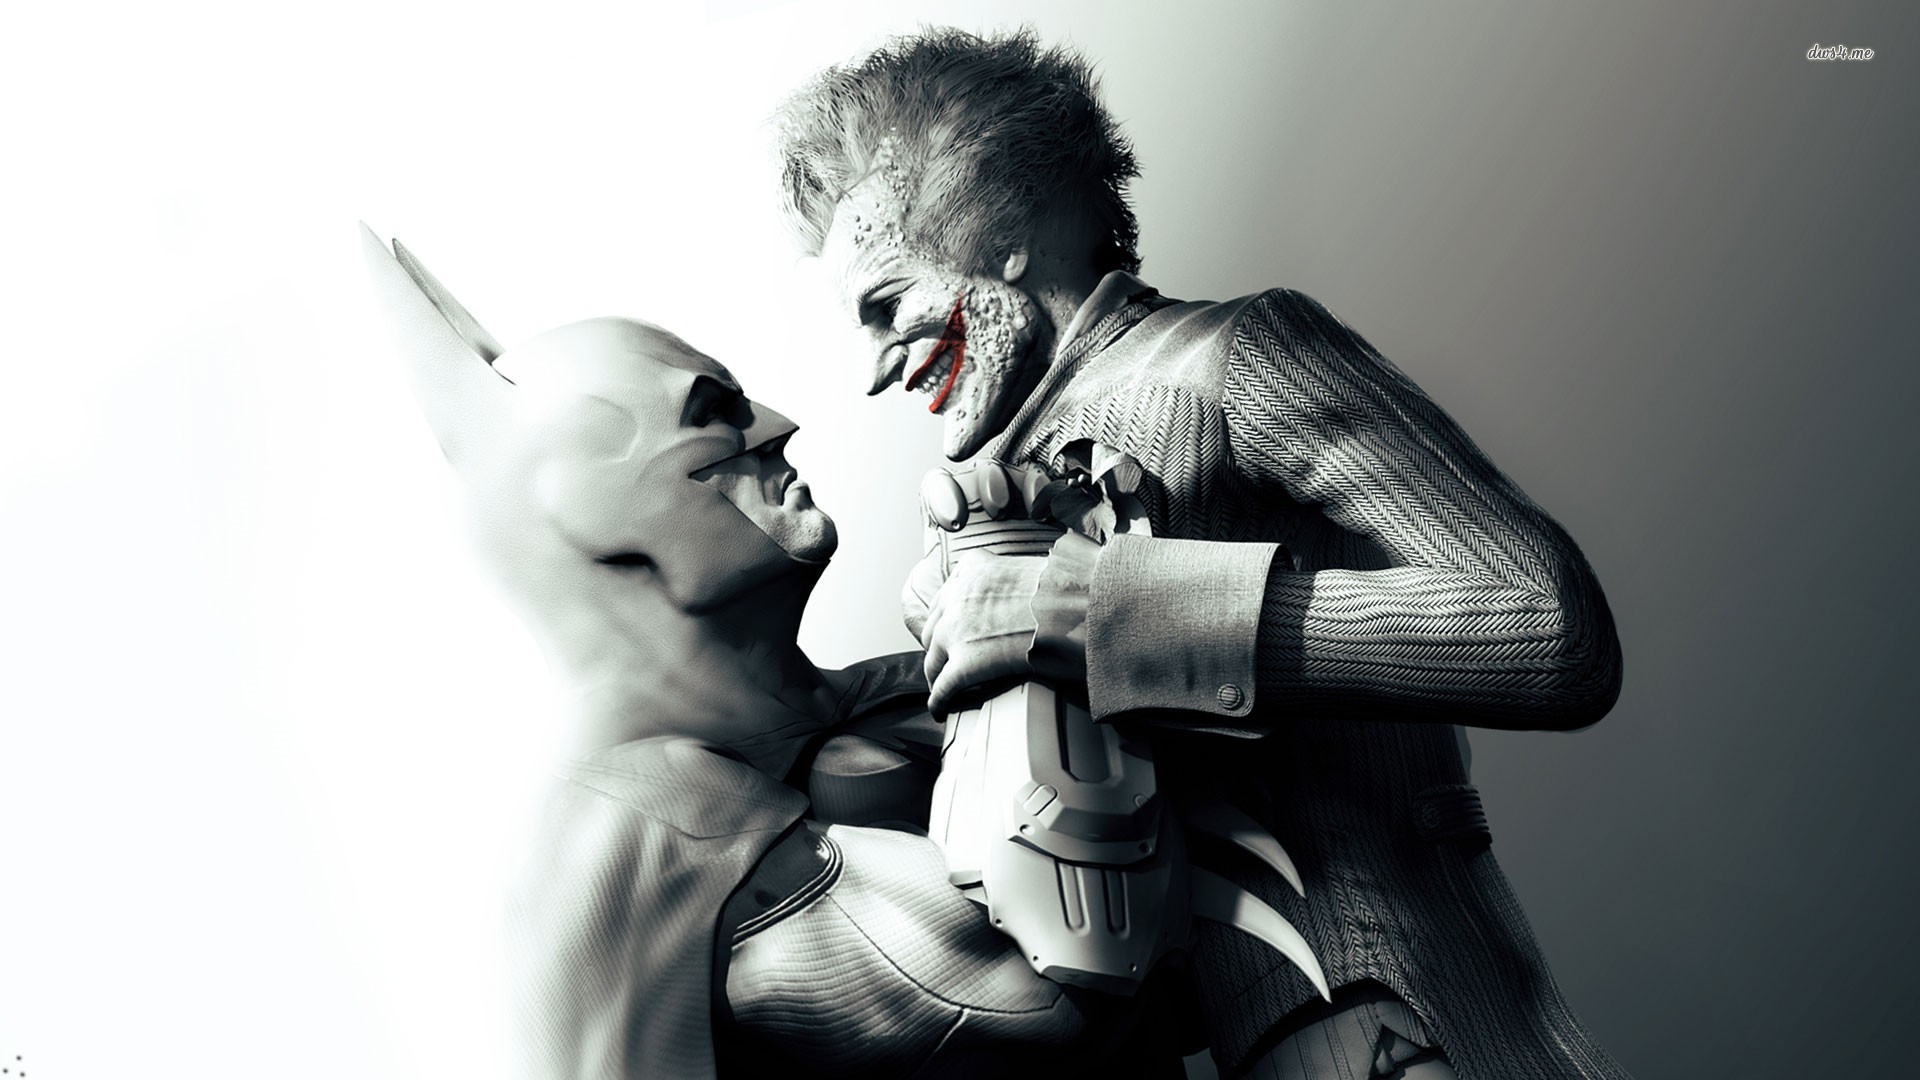 Batman Joker Wallpaper